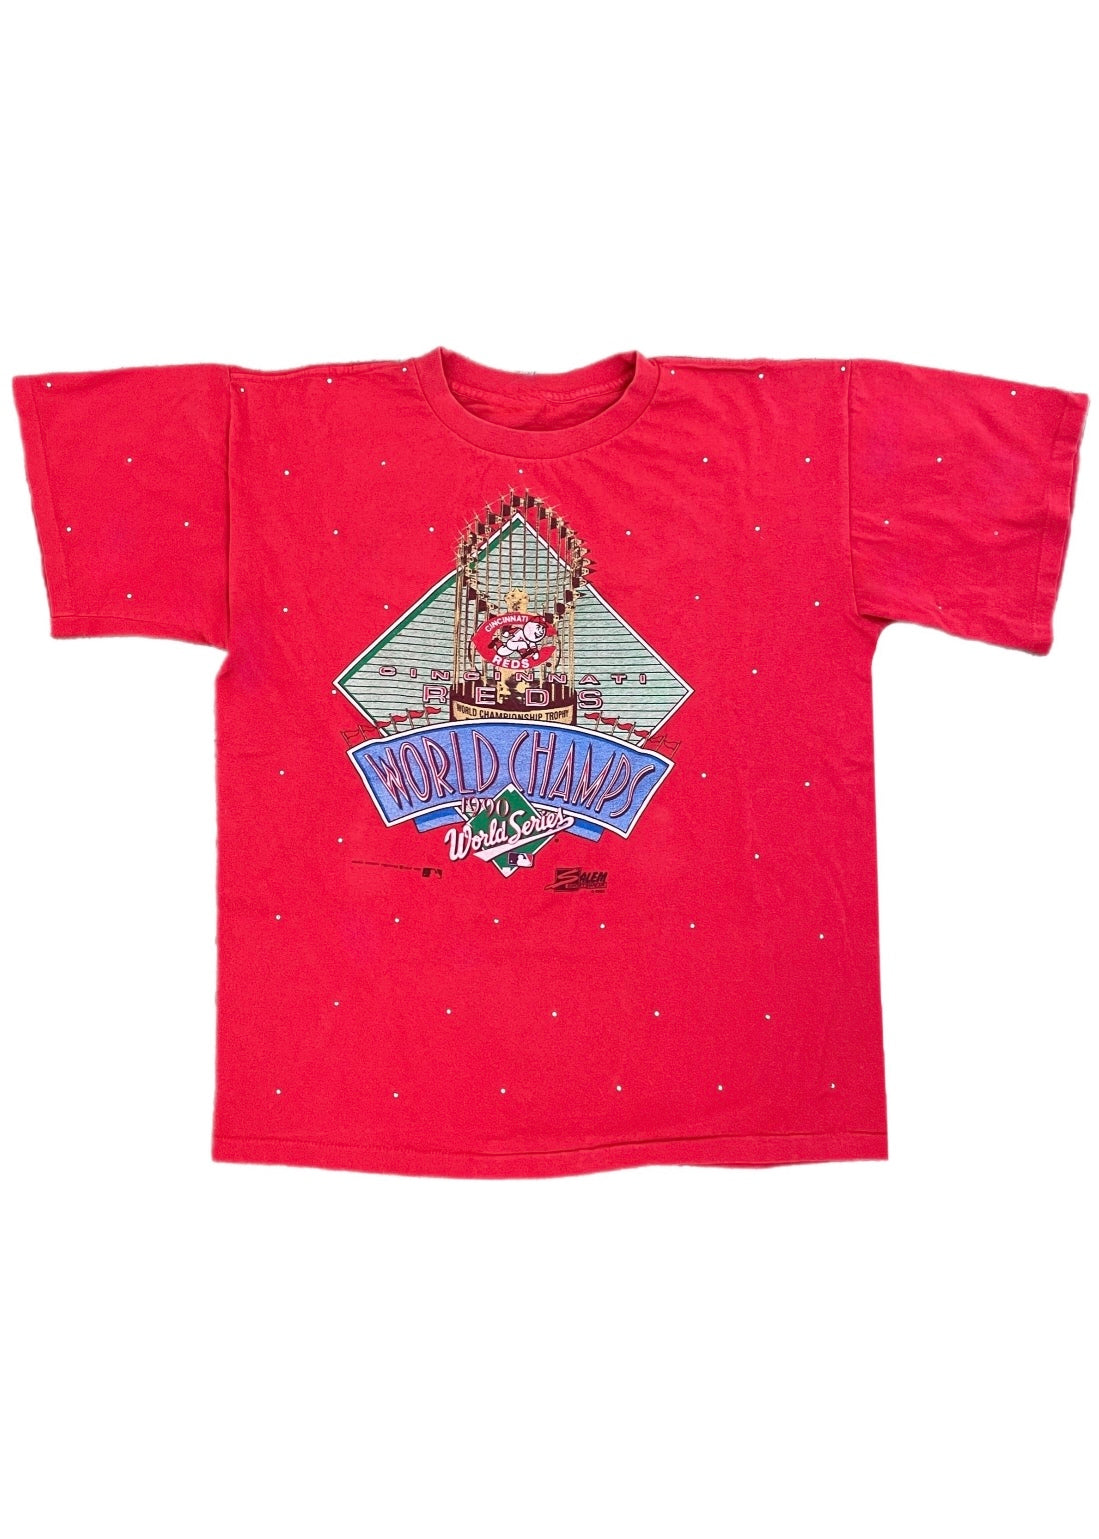 Cincinnati Reds Shirt Vintage Mlb Team Spirit - Anynee